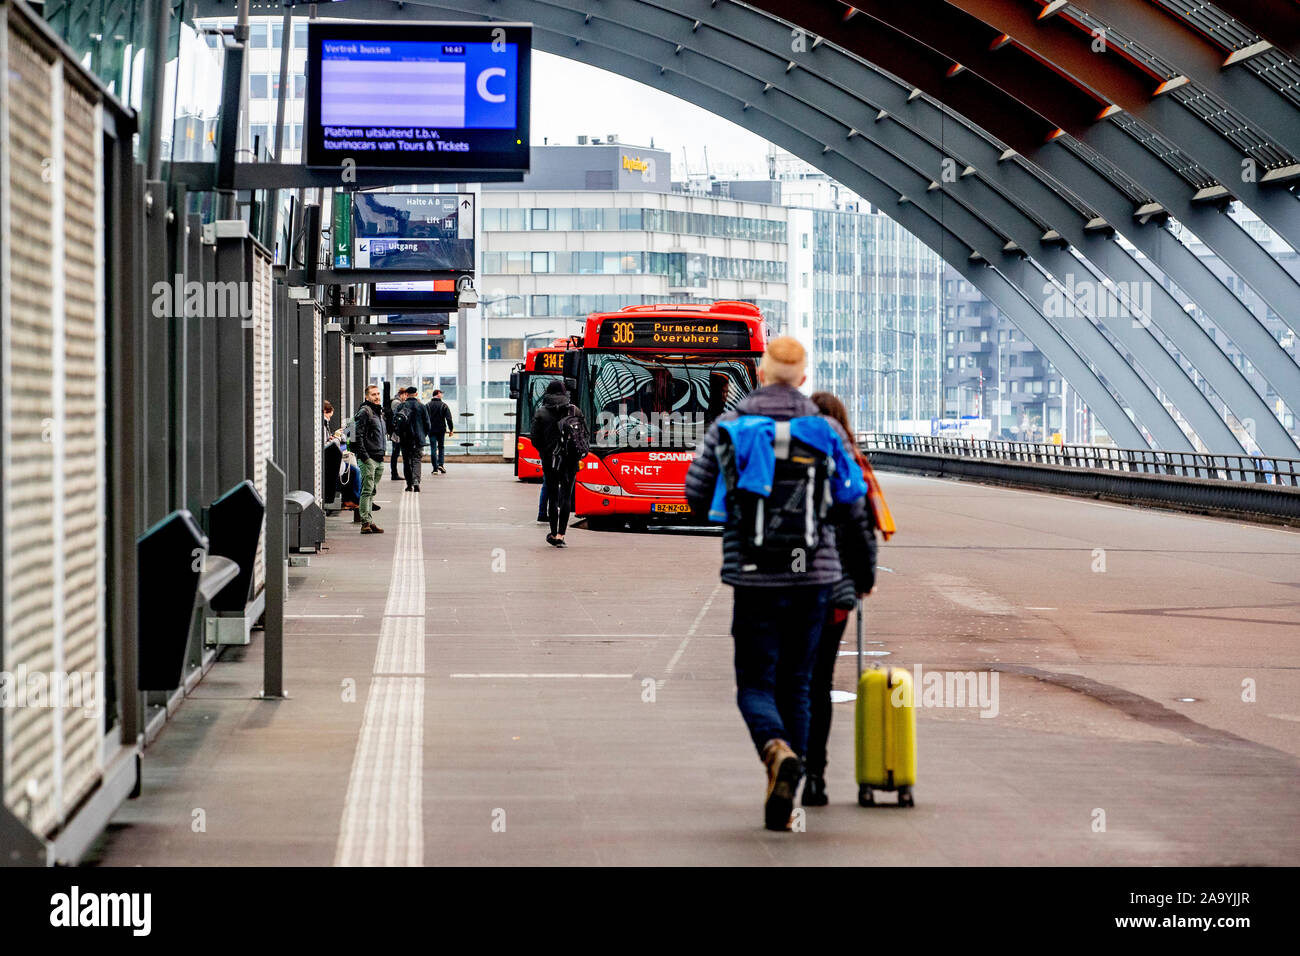 AMSTERDAM, Stadtzentrum, 18-11-2019, höhere Fahrpreise der öffentlichen Verkehrsmittel. Das umfangreiche Netzwerk wird durch die GVB betrieben und verbindet die Stadt mit dem Zug, der Straßenbahn, der U-Bahn, Bus und Fähre. Unbegrenzte Nutzung der öffentlichen Verkehrsmittel in Amsterdam mit dem OV Chipkarte. Stockfoto